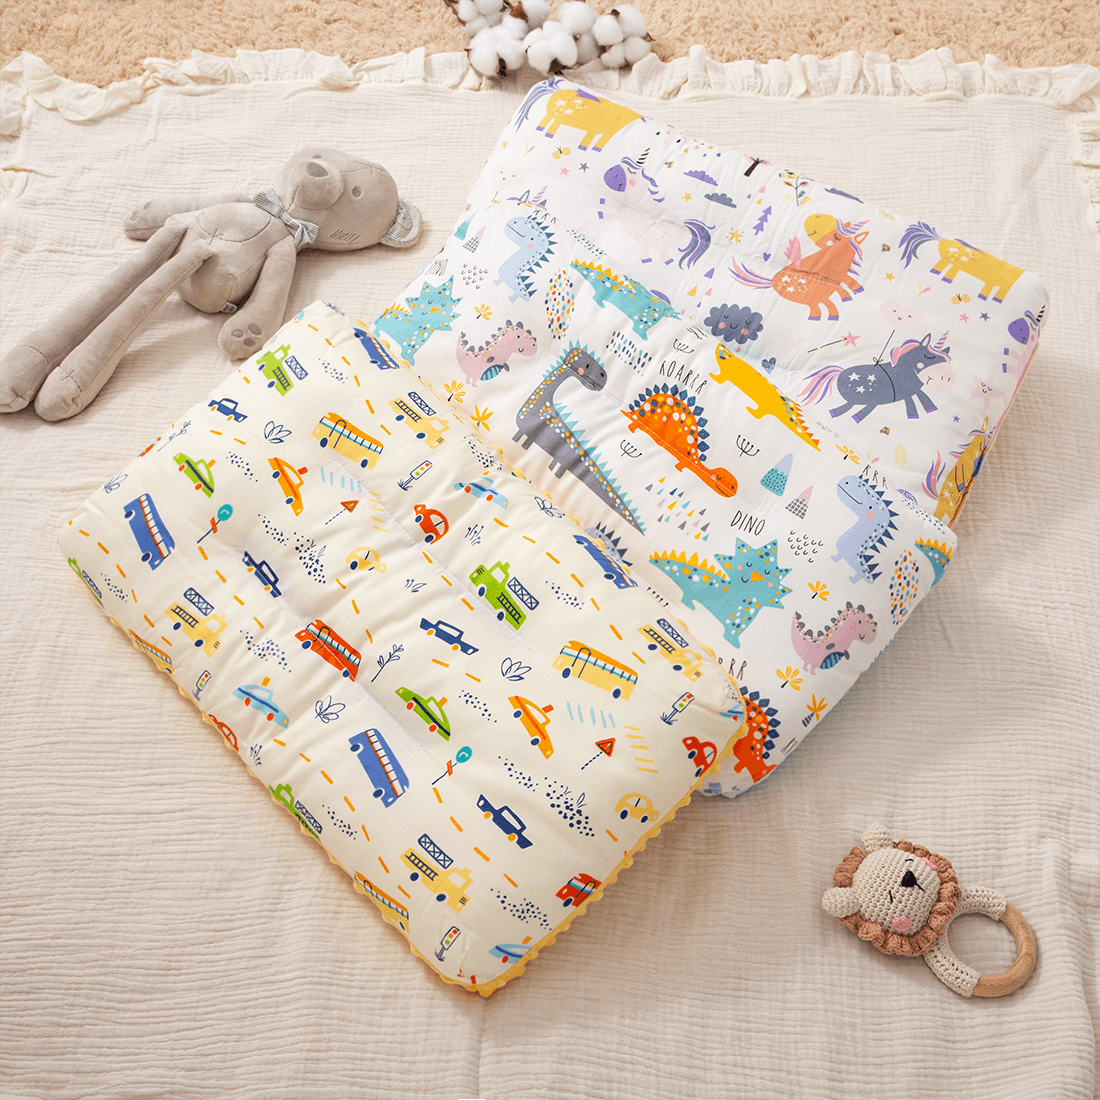 100%純棉嬰兒安撫枕卡通恐龍獨角獸圖案兒童柔軟彈性睡枕